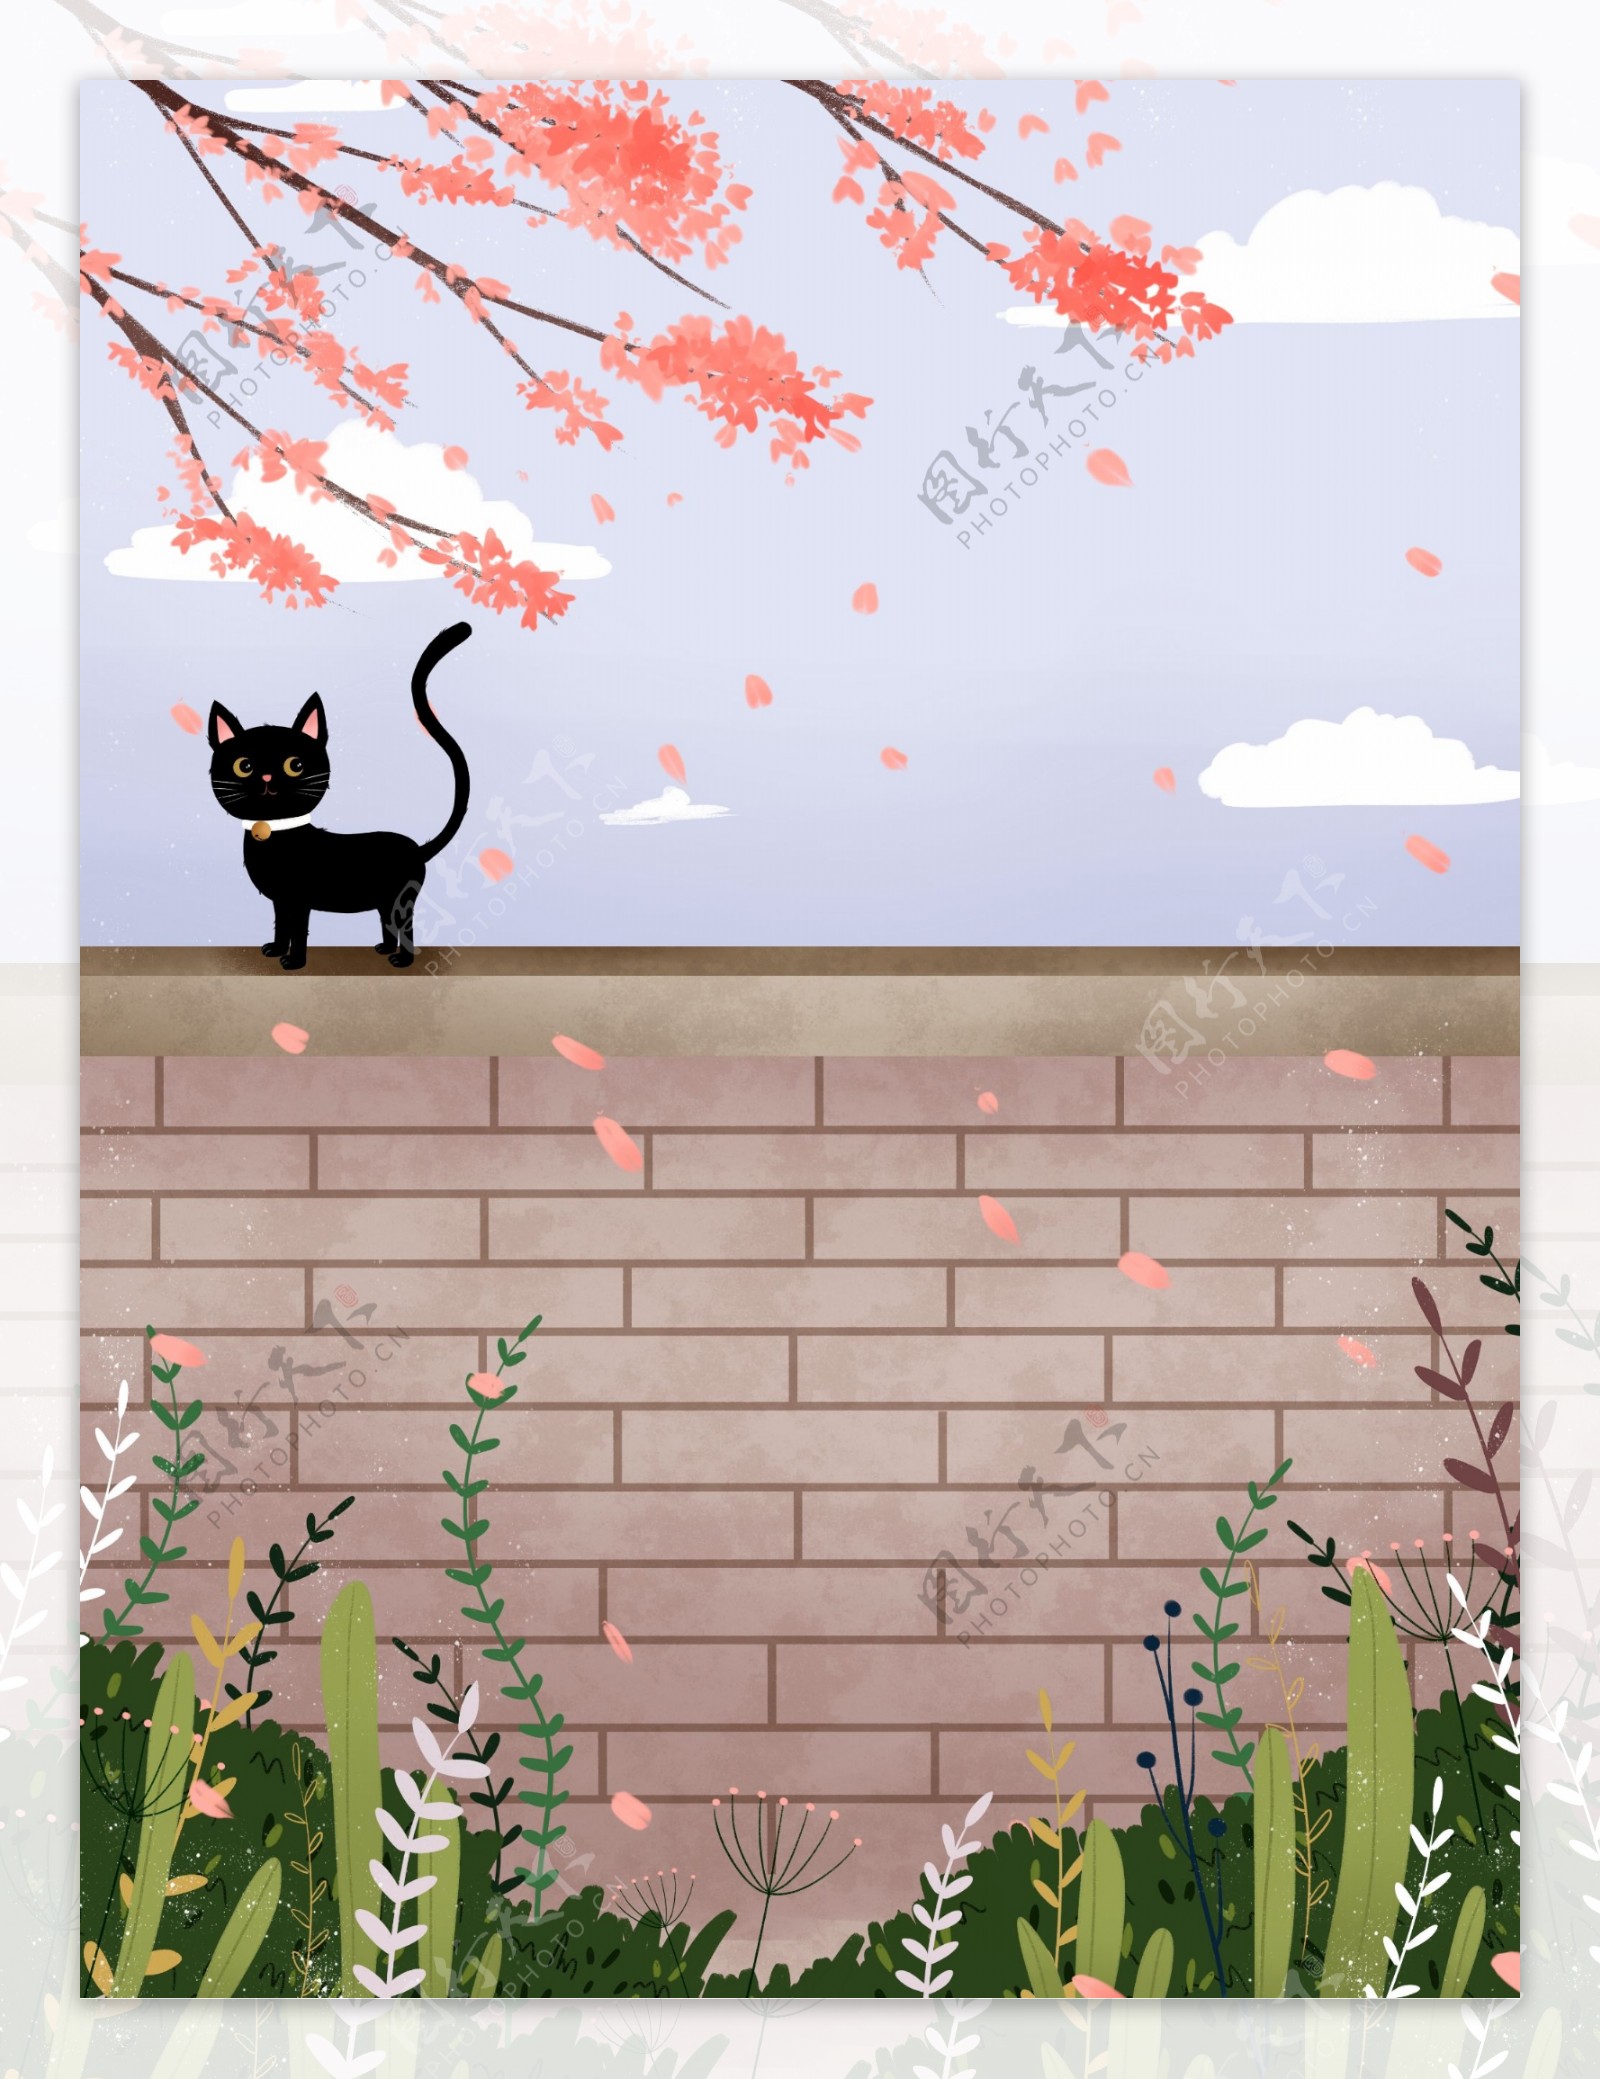 围墙上的黑猫背景设计